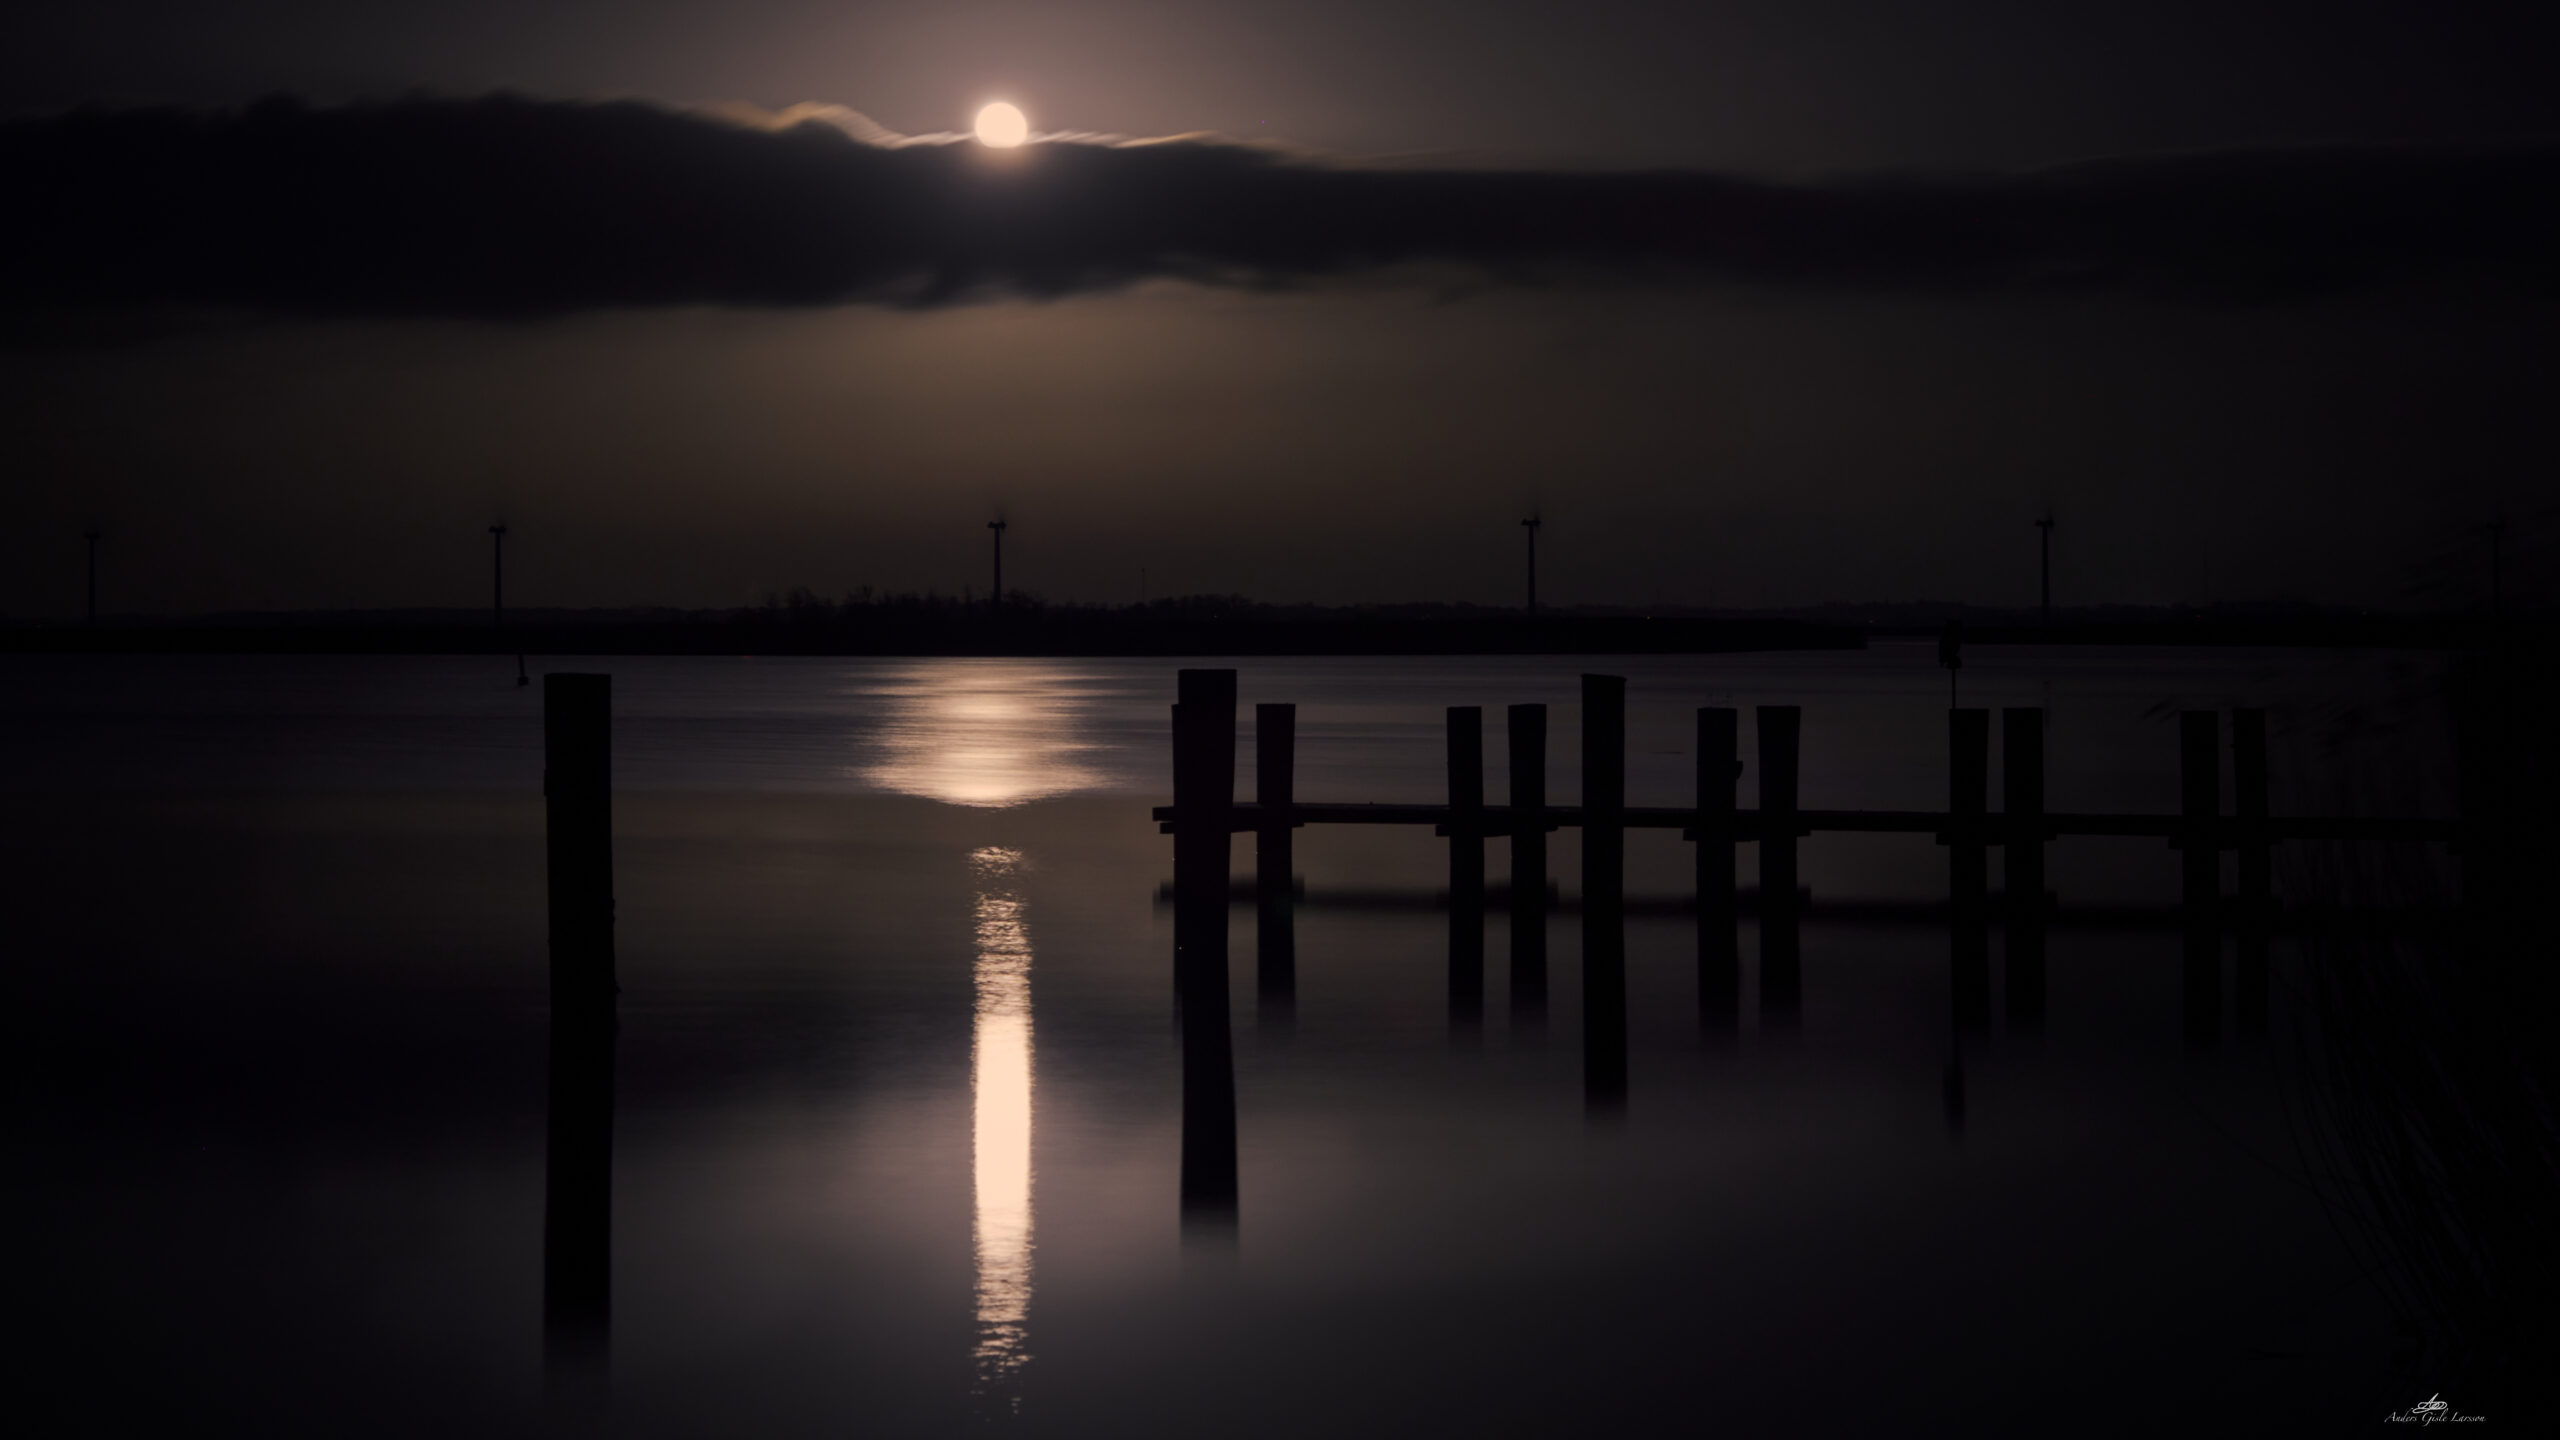 2023-01-08 19.05.03 - Moonlight Shadow, 8-365, Uge 1, Randers Fjord, Uggelhuse, Randers - _1080013 - ©Anders Gisle Larsson.jpg